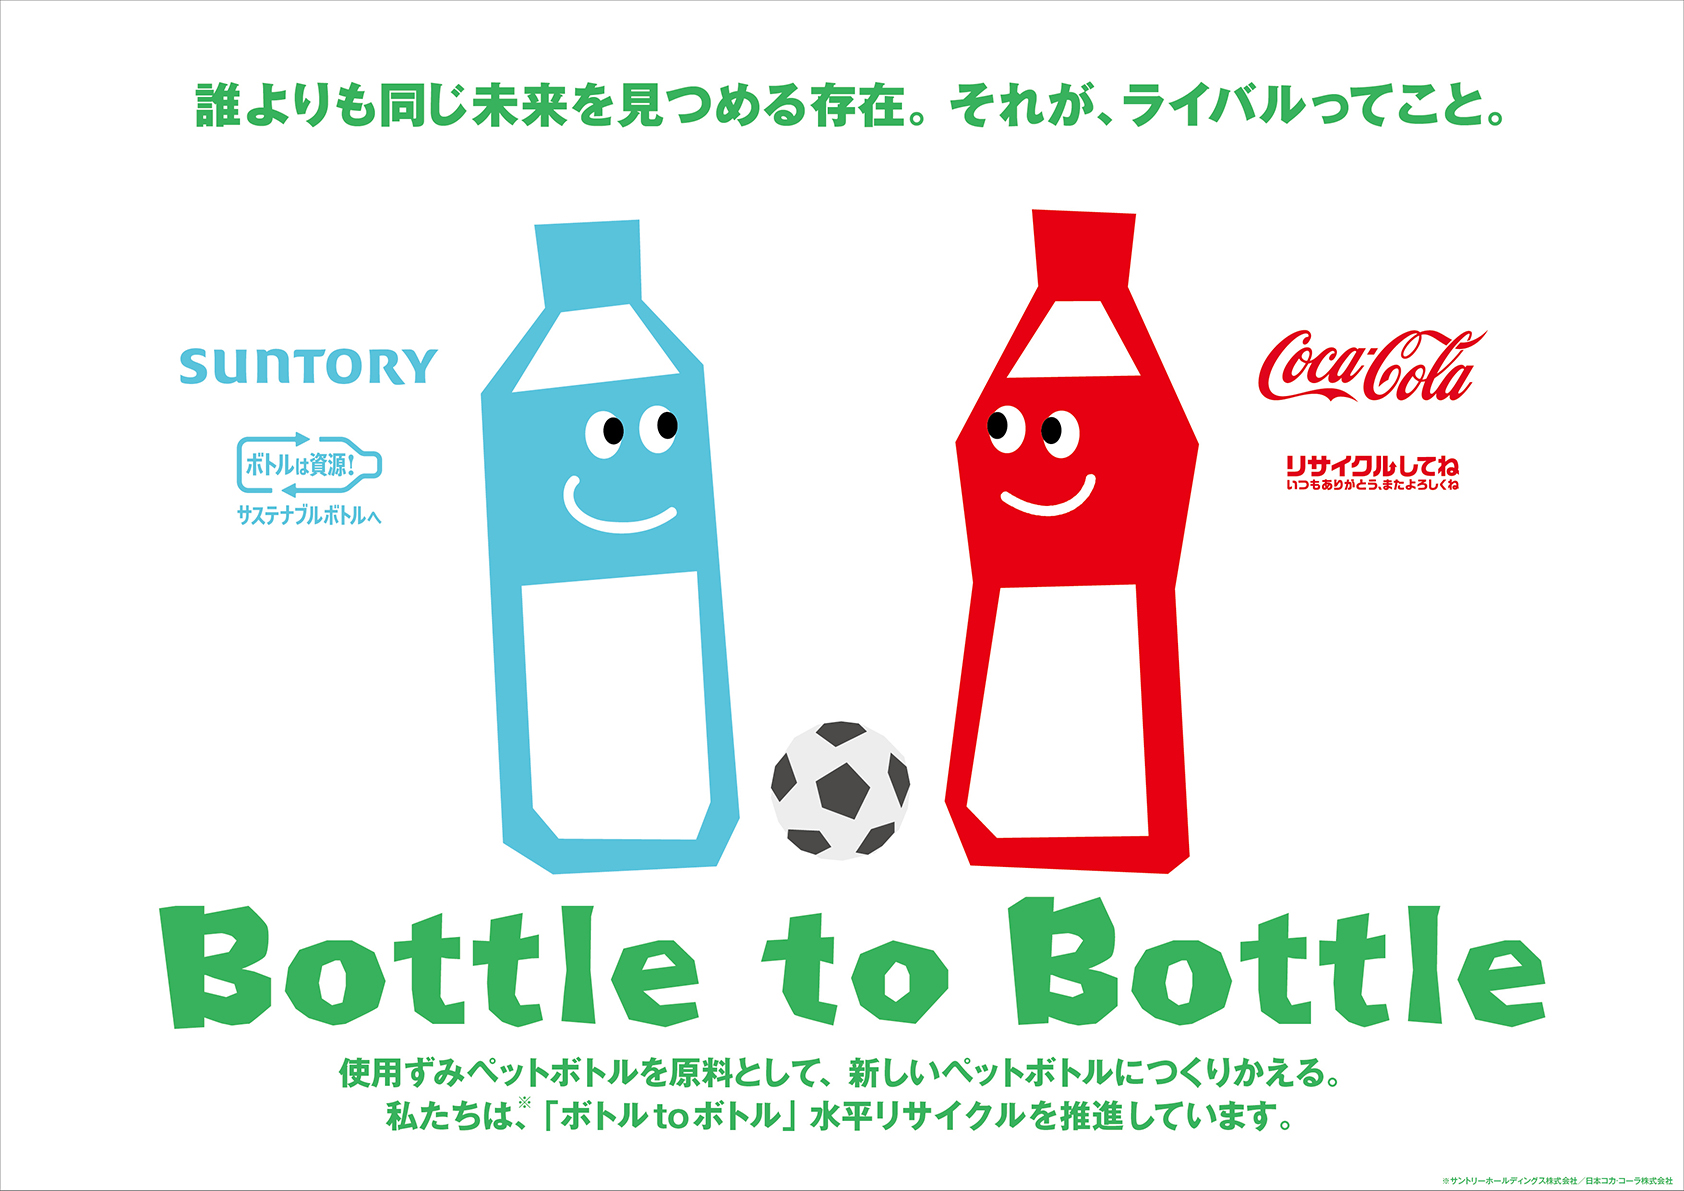 「ボトルtoボトル」水平リサイクル啓発メッセージ